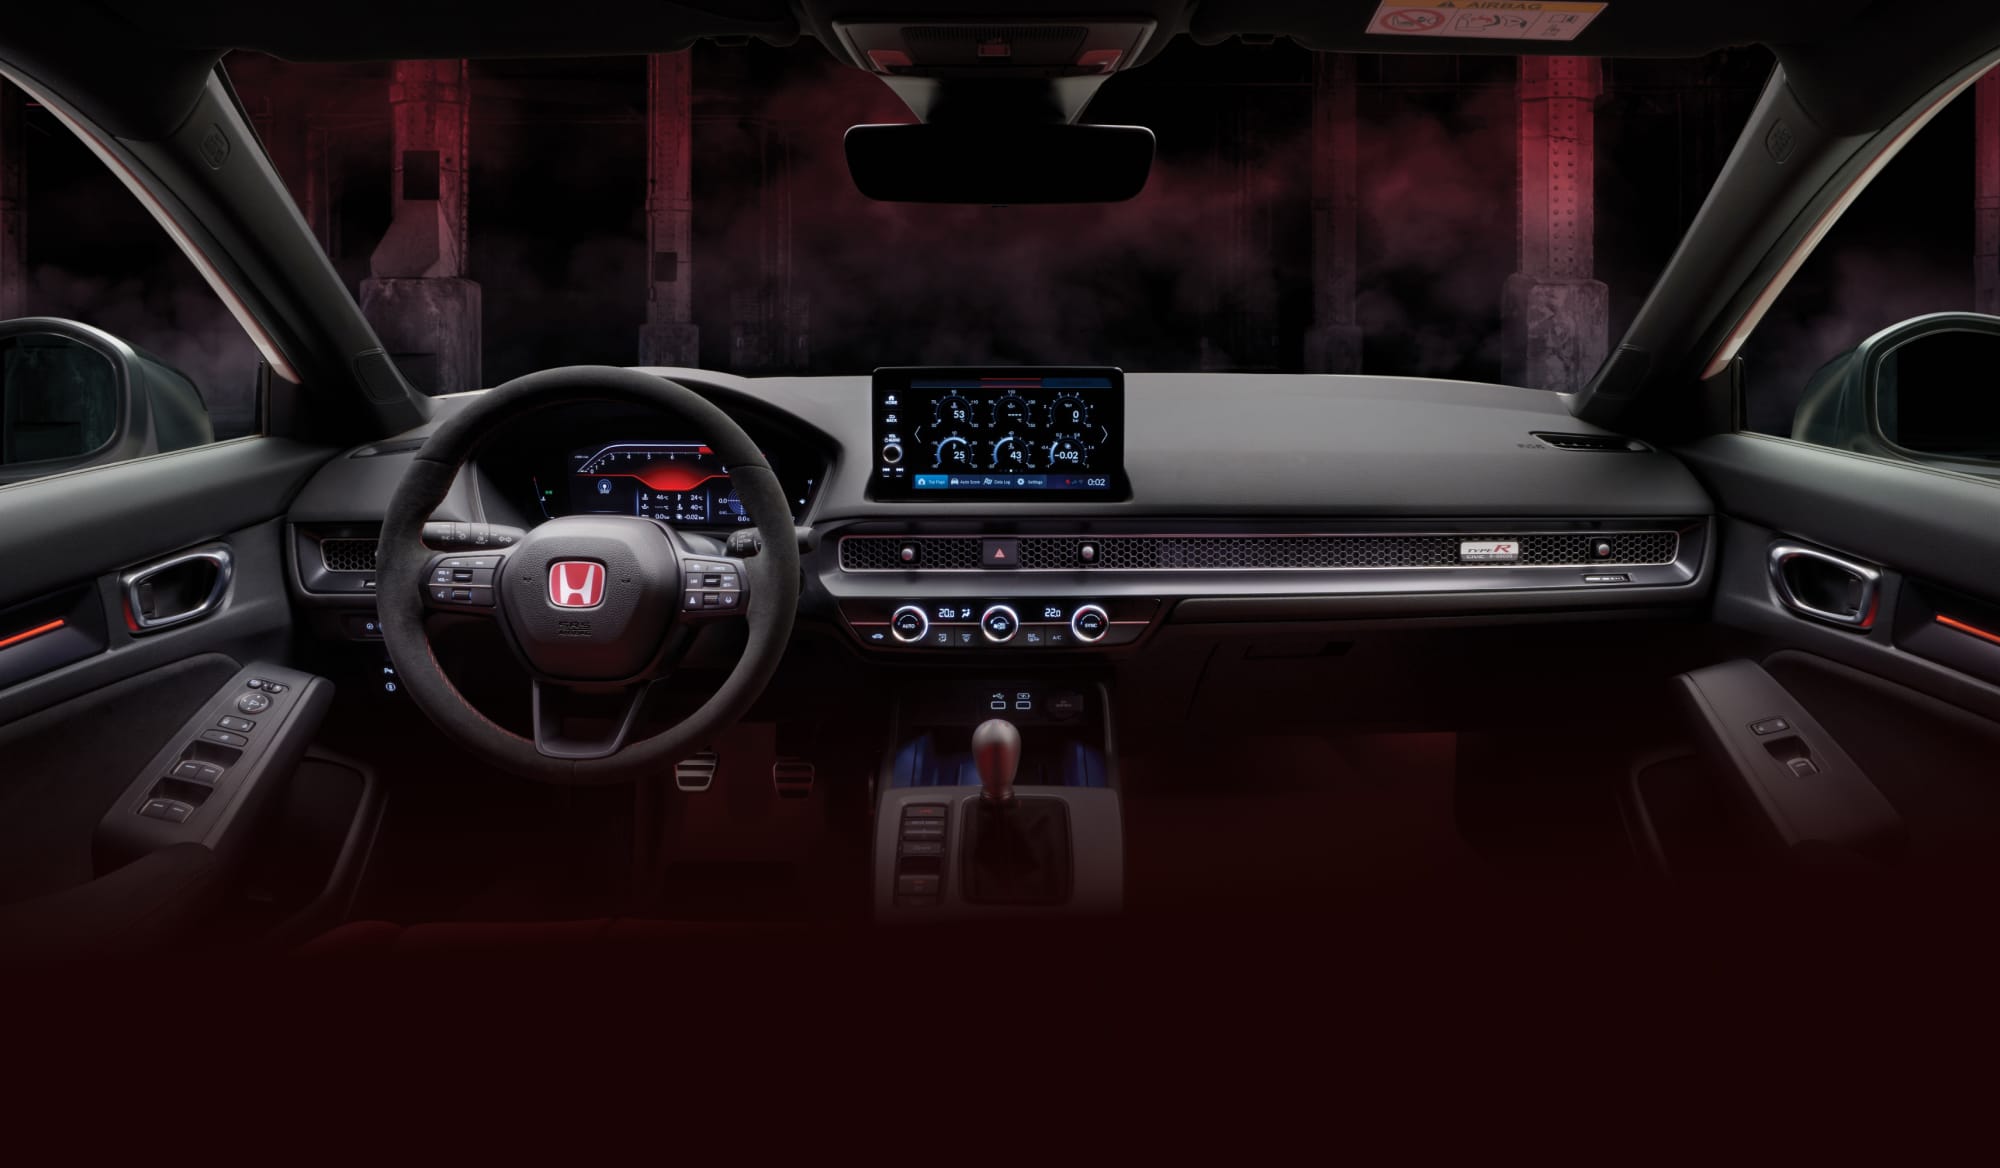 Interior of Honda Civic e:HEV